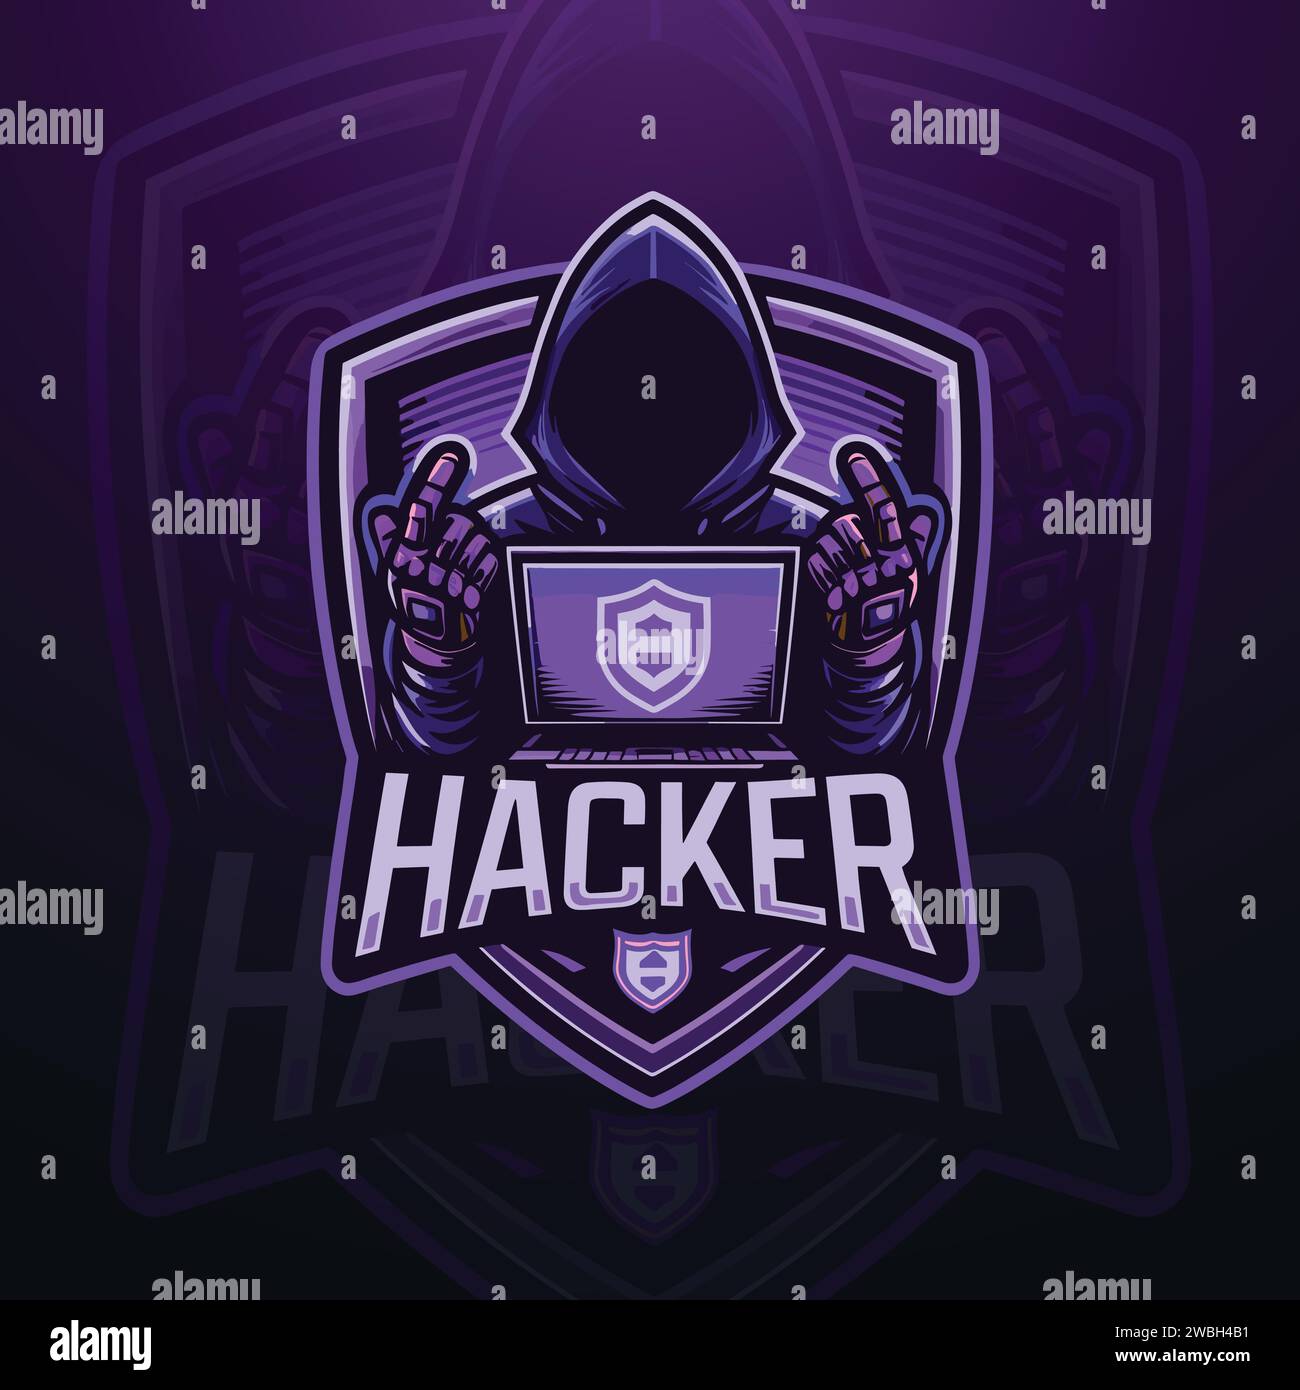 Hacker E-sports gaming mascot logo design Stock Vector